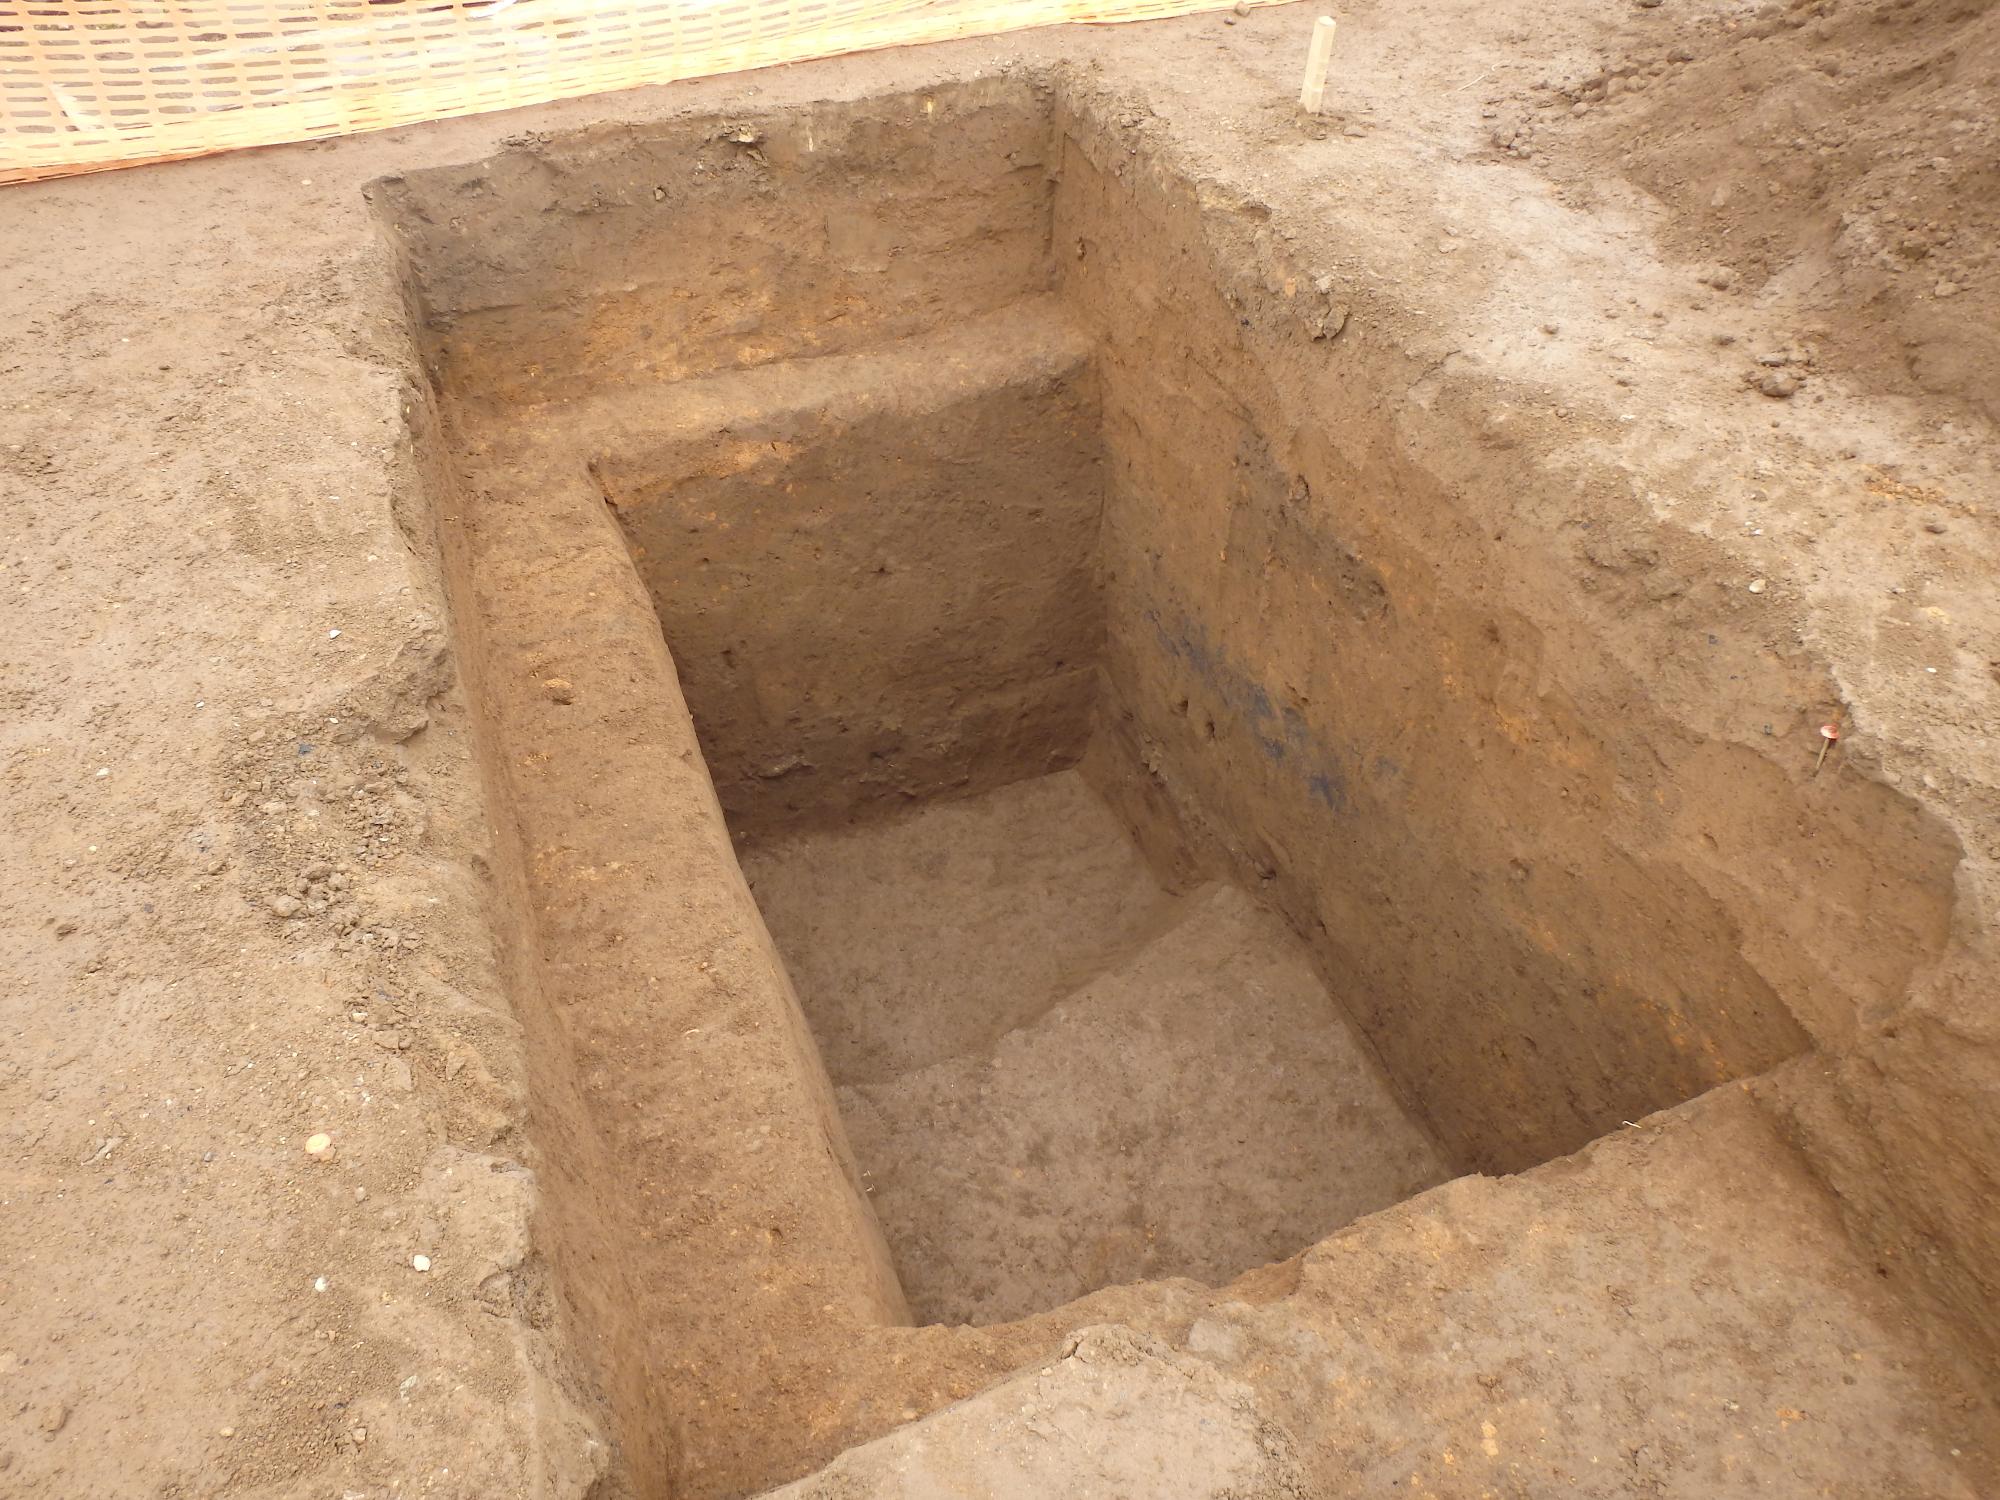 発掘調査によって竪穴住居が検出されて状況